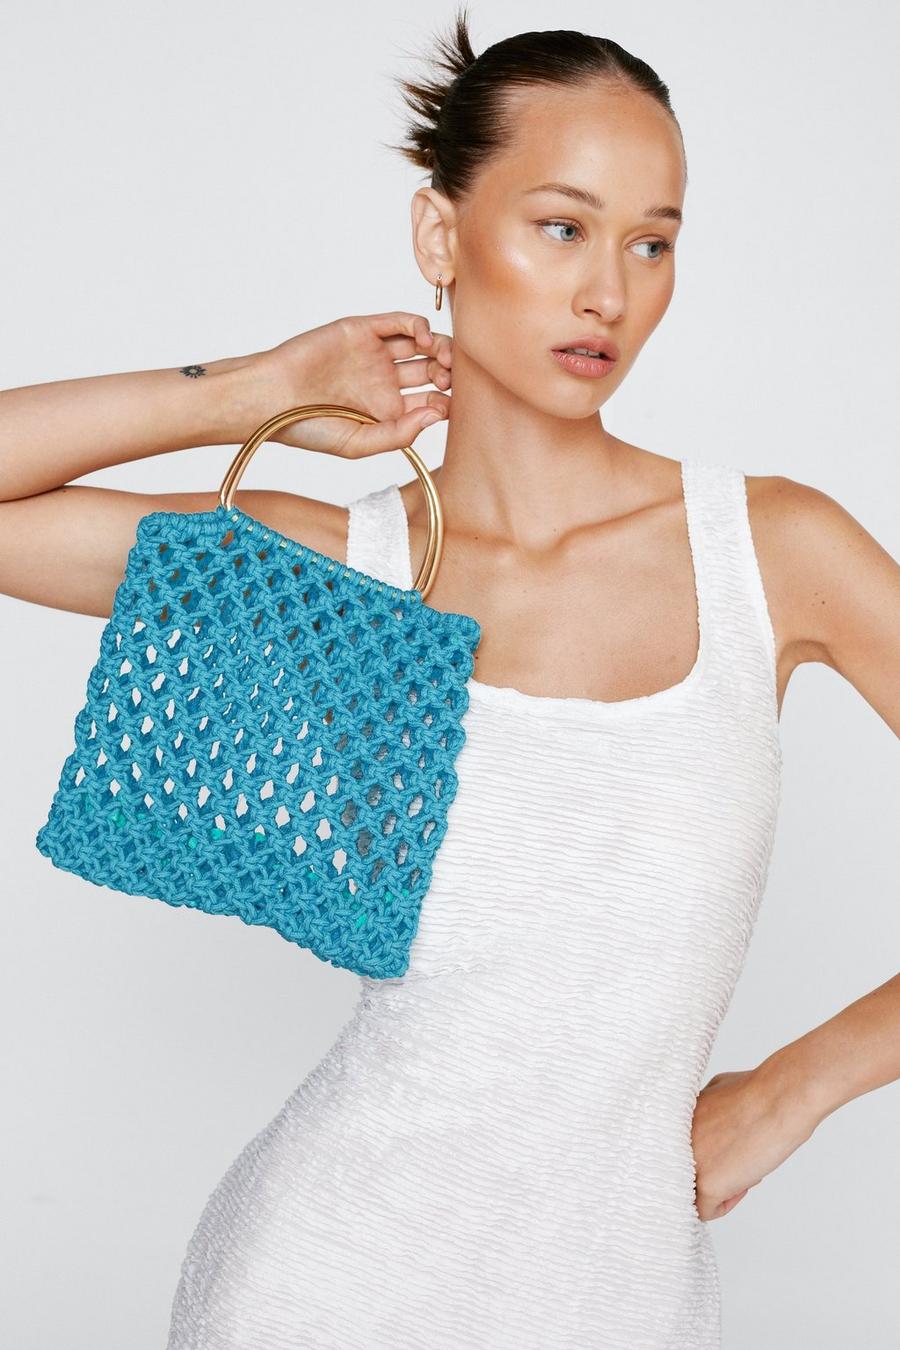 Aqua blue Square Crochet Tote Bag